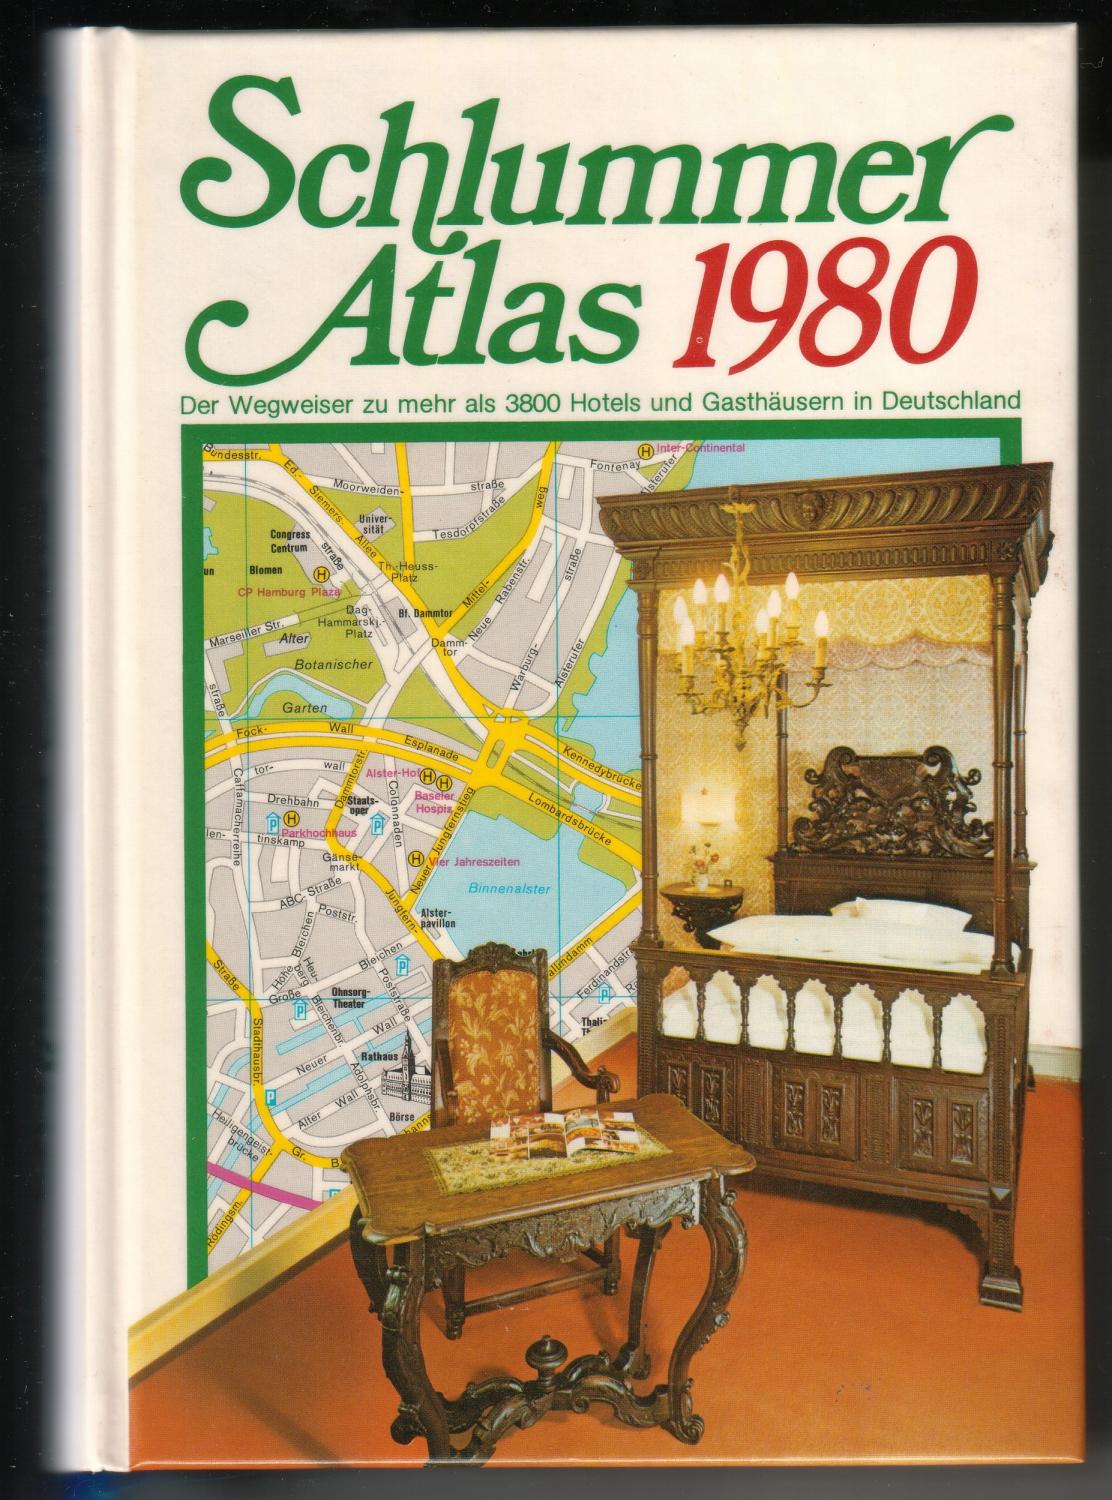 Schlummer Atlas 1980 - Der Wegweiser zu mehr als 3800 Hotels und Gasthäusern in Deutschland